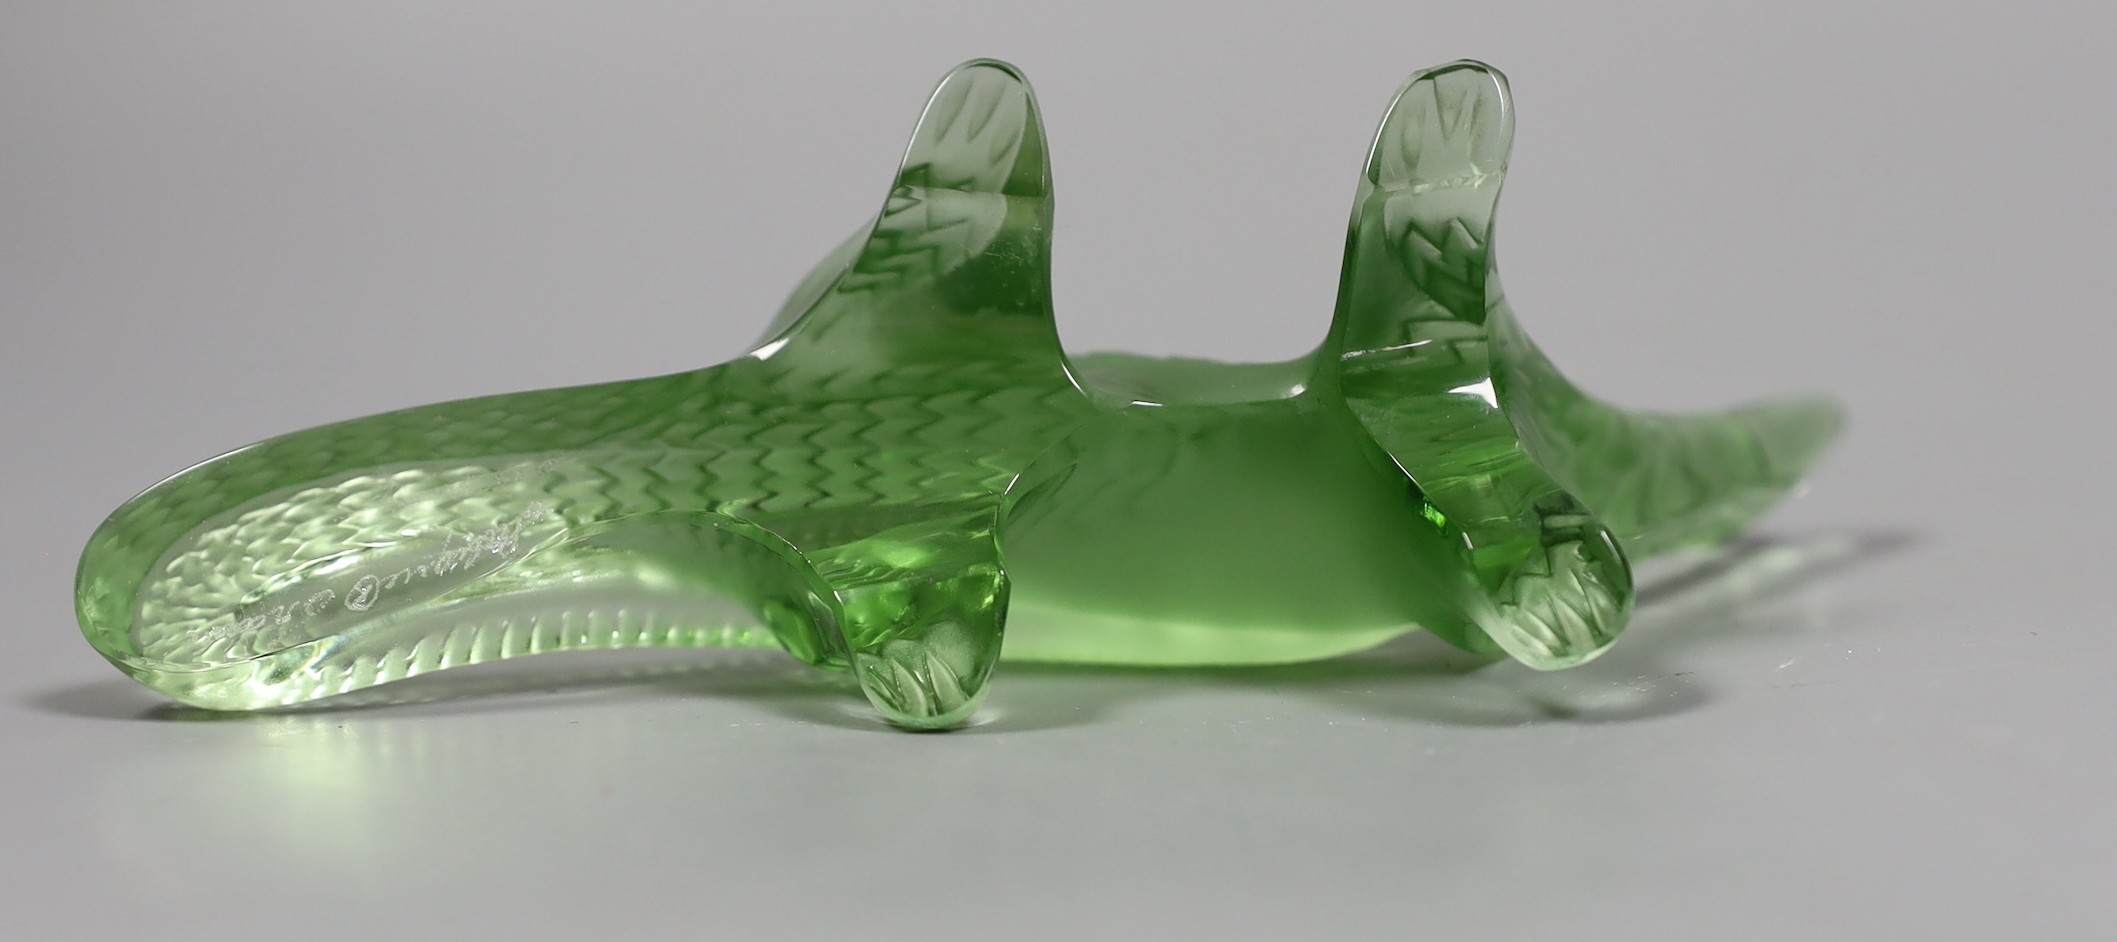 A Lalique green glass salamander, 18cm long